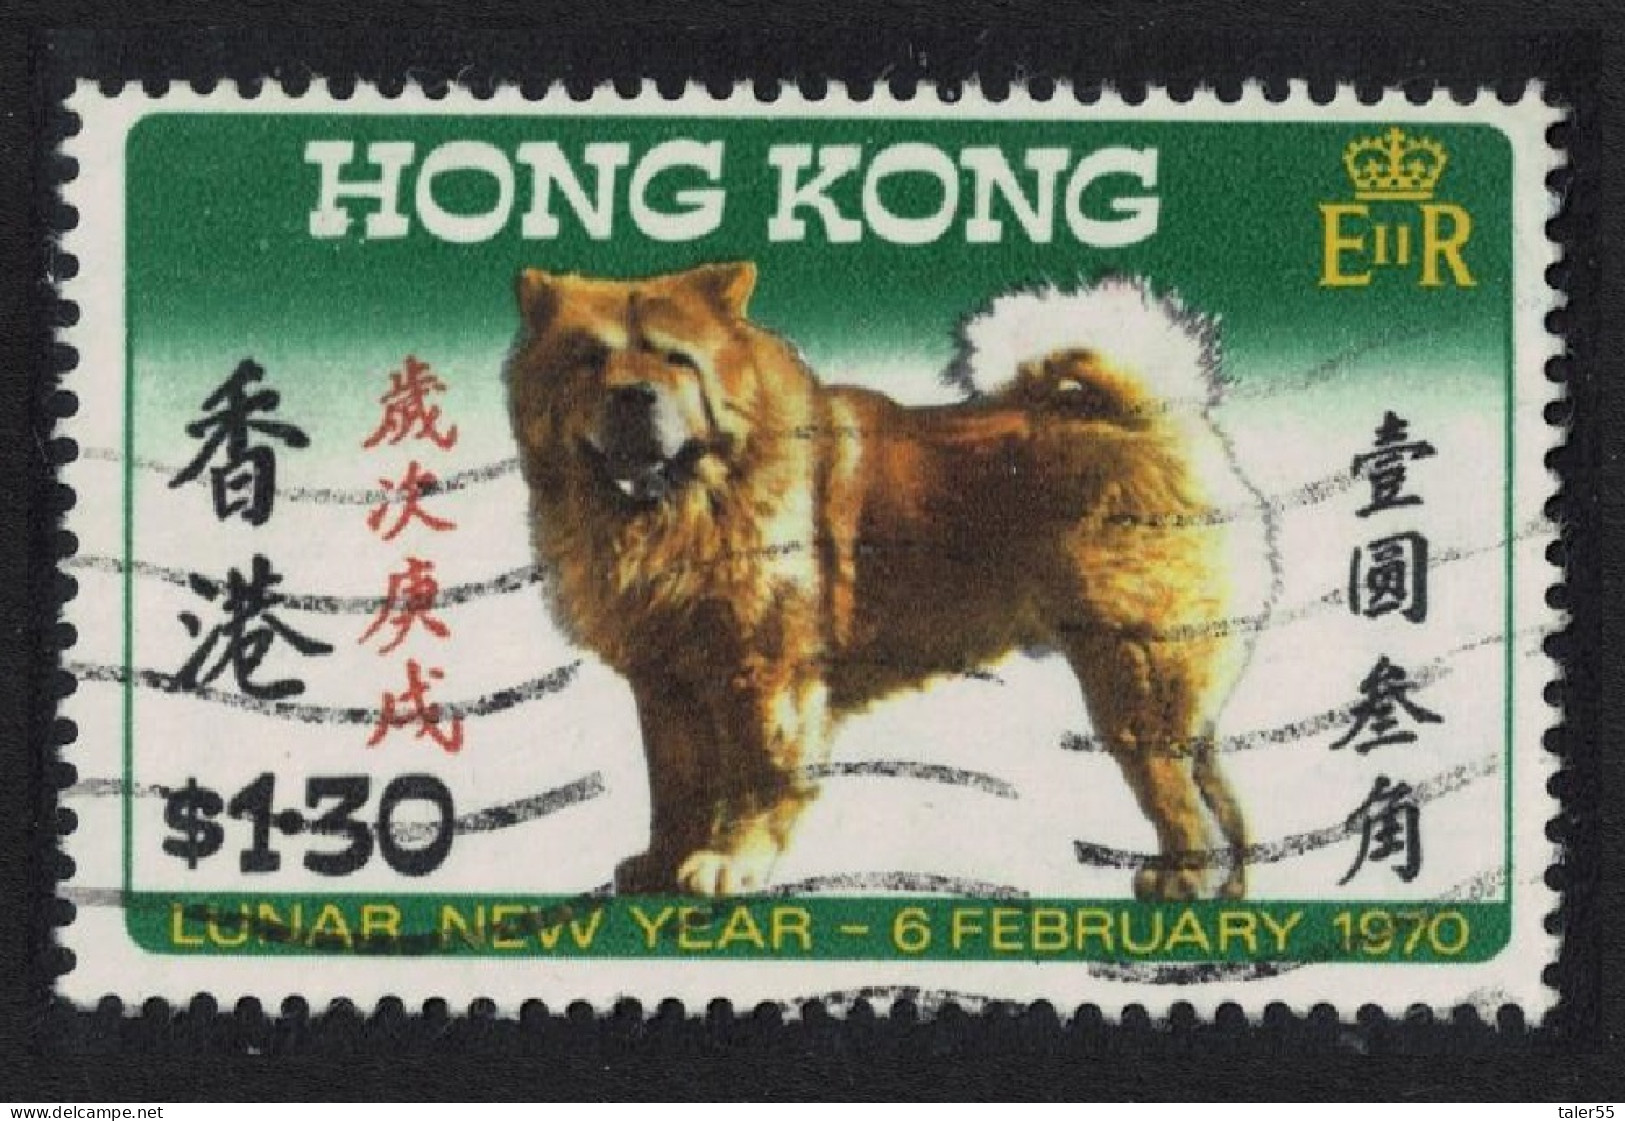 Hong Kong Chinese New Year. Year Of The Dog $1.30 1970 Canc SG#262 - Usati